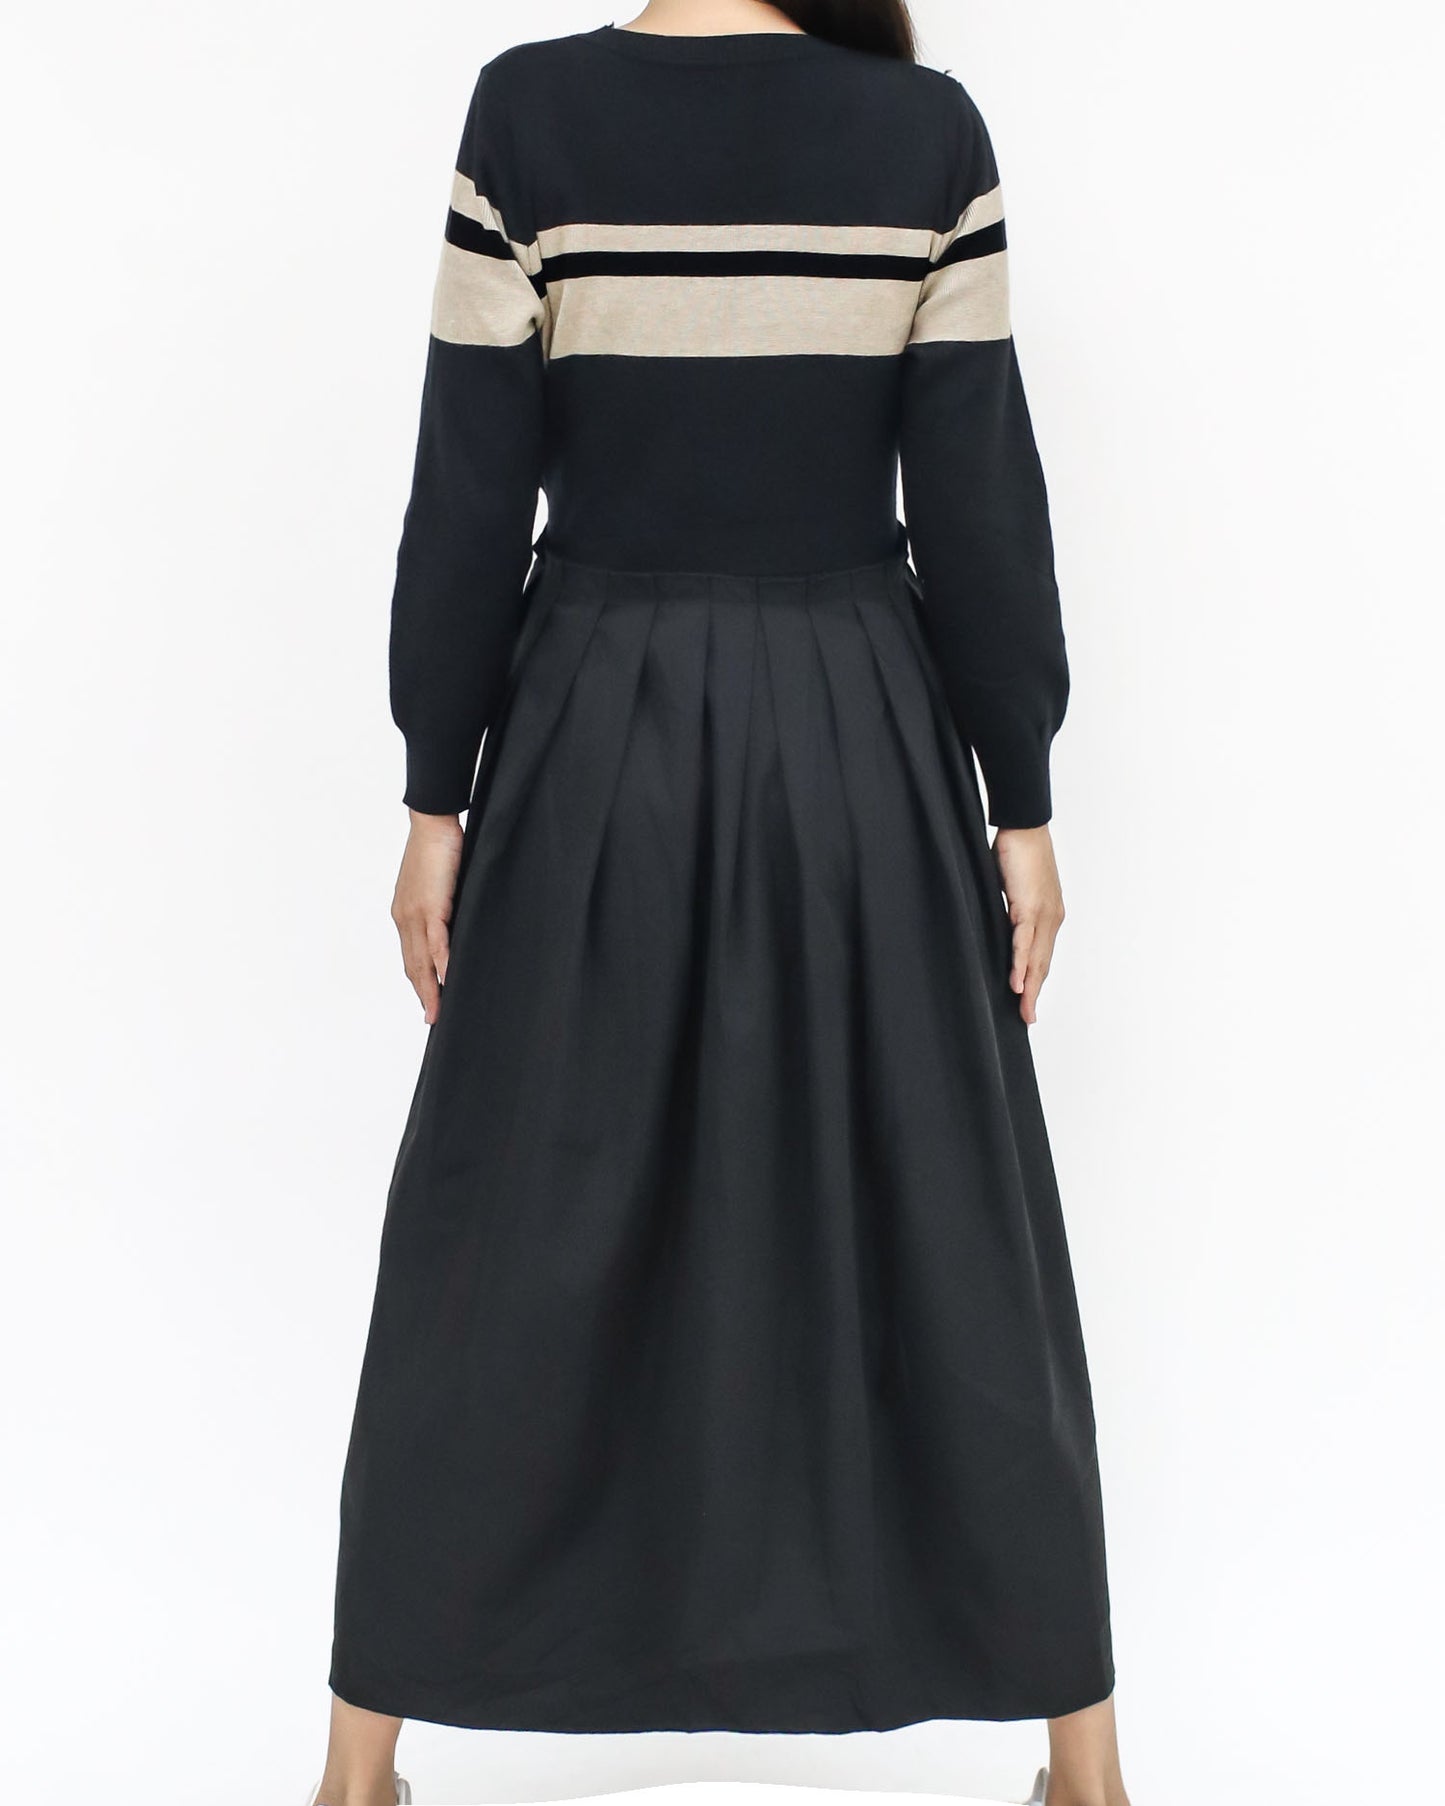 黑色和象牙色條紋針織襯衫喇叭連身裙